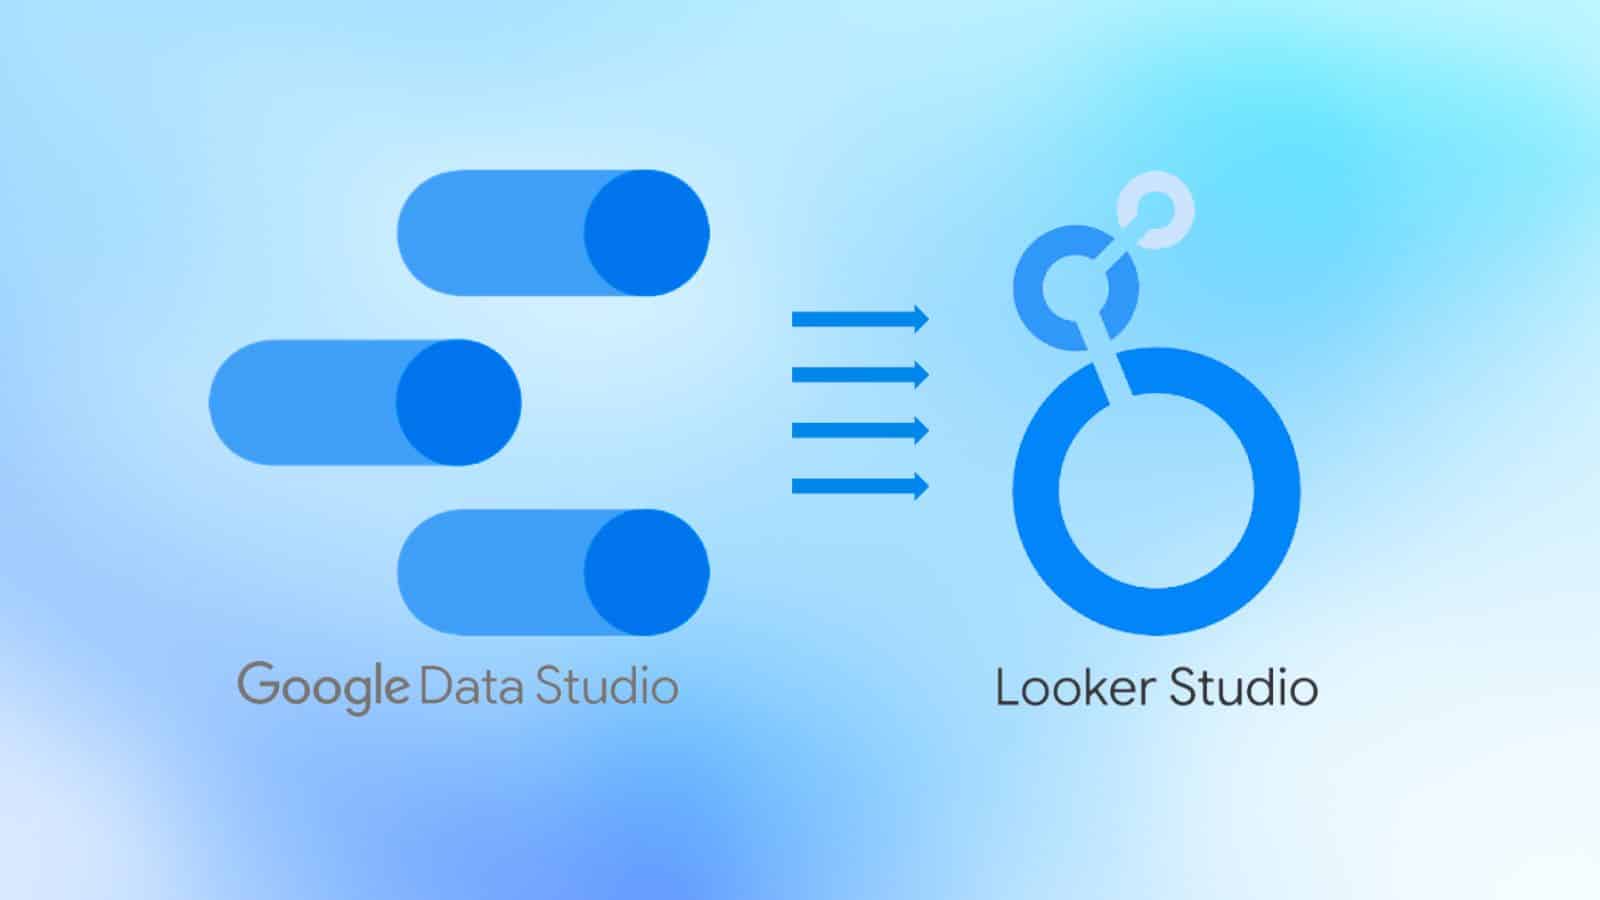 Looker Studio vs Data Studio